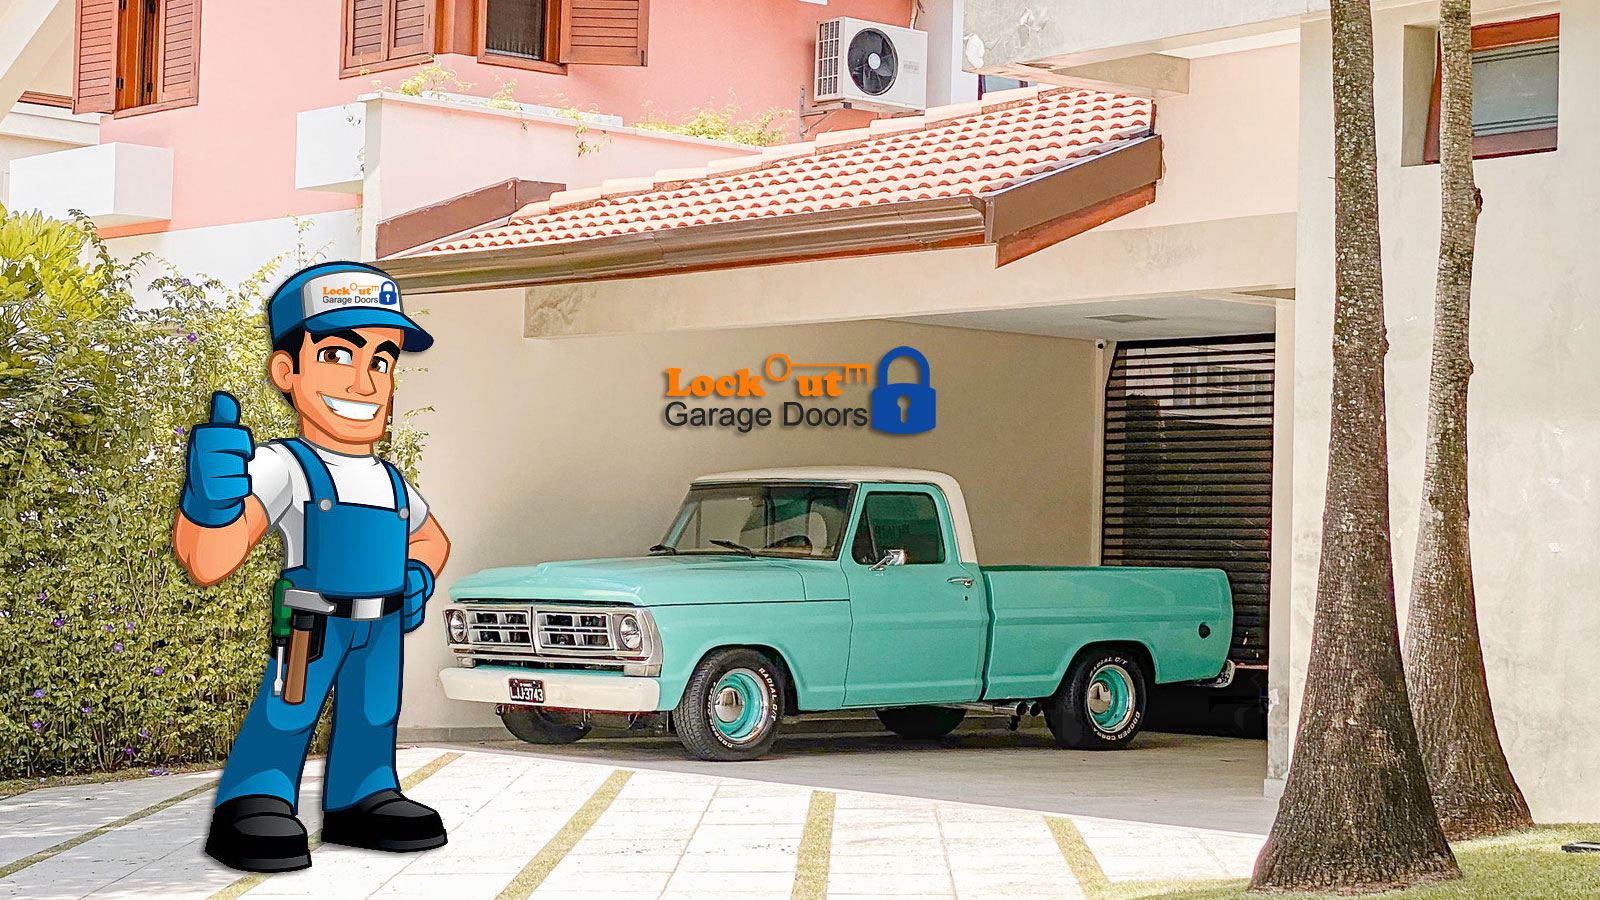 Garage-Doors-Opener-Repair-San-Diego